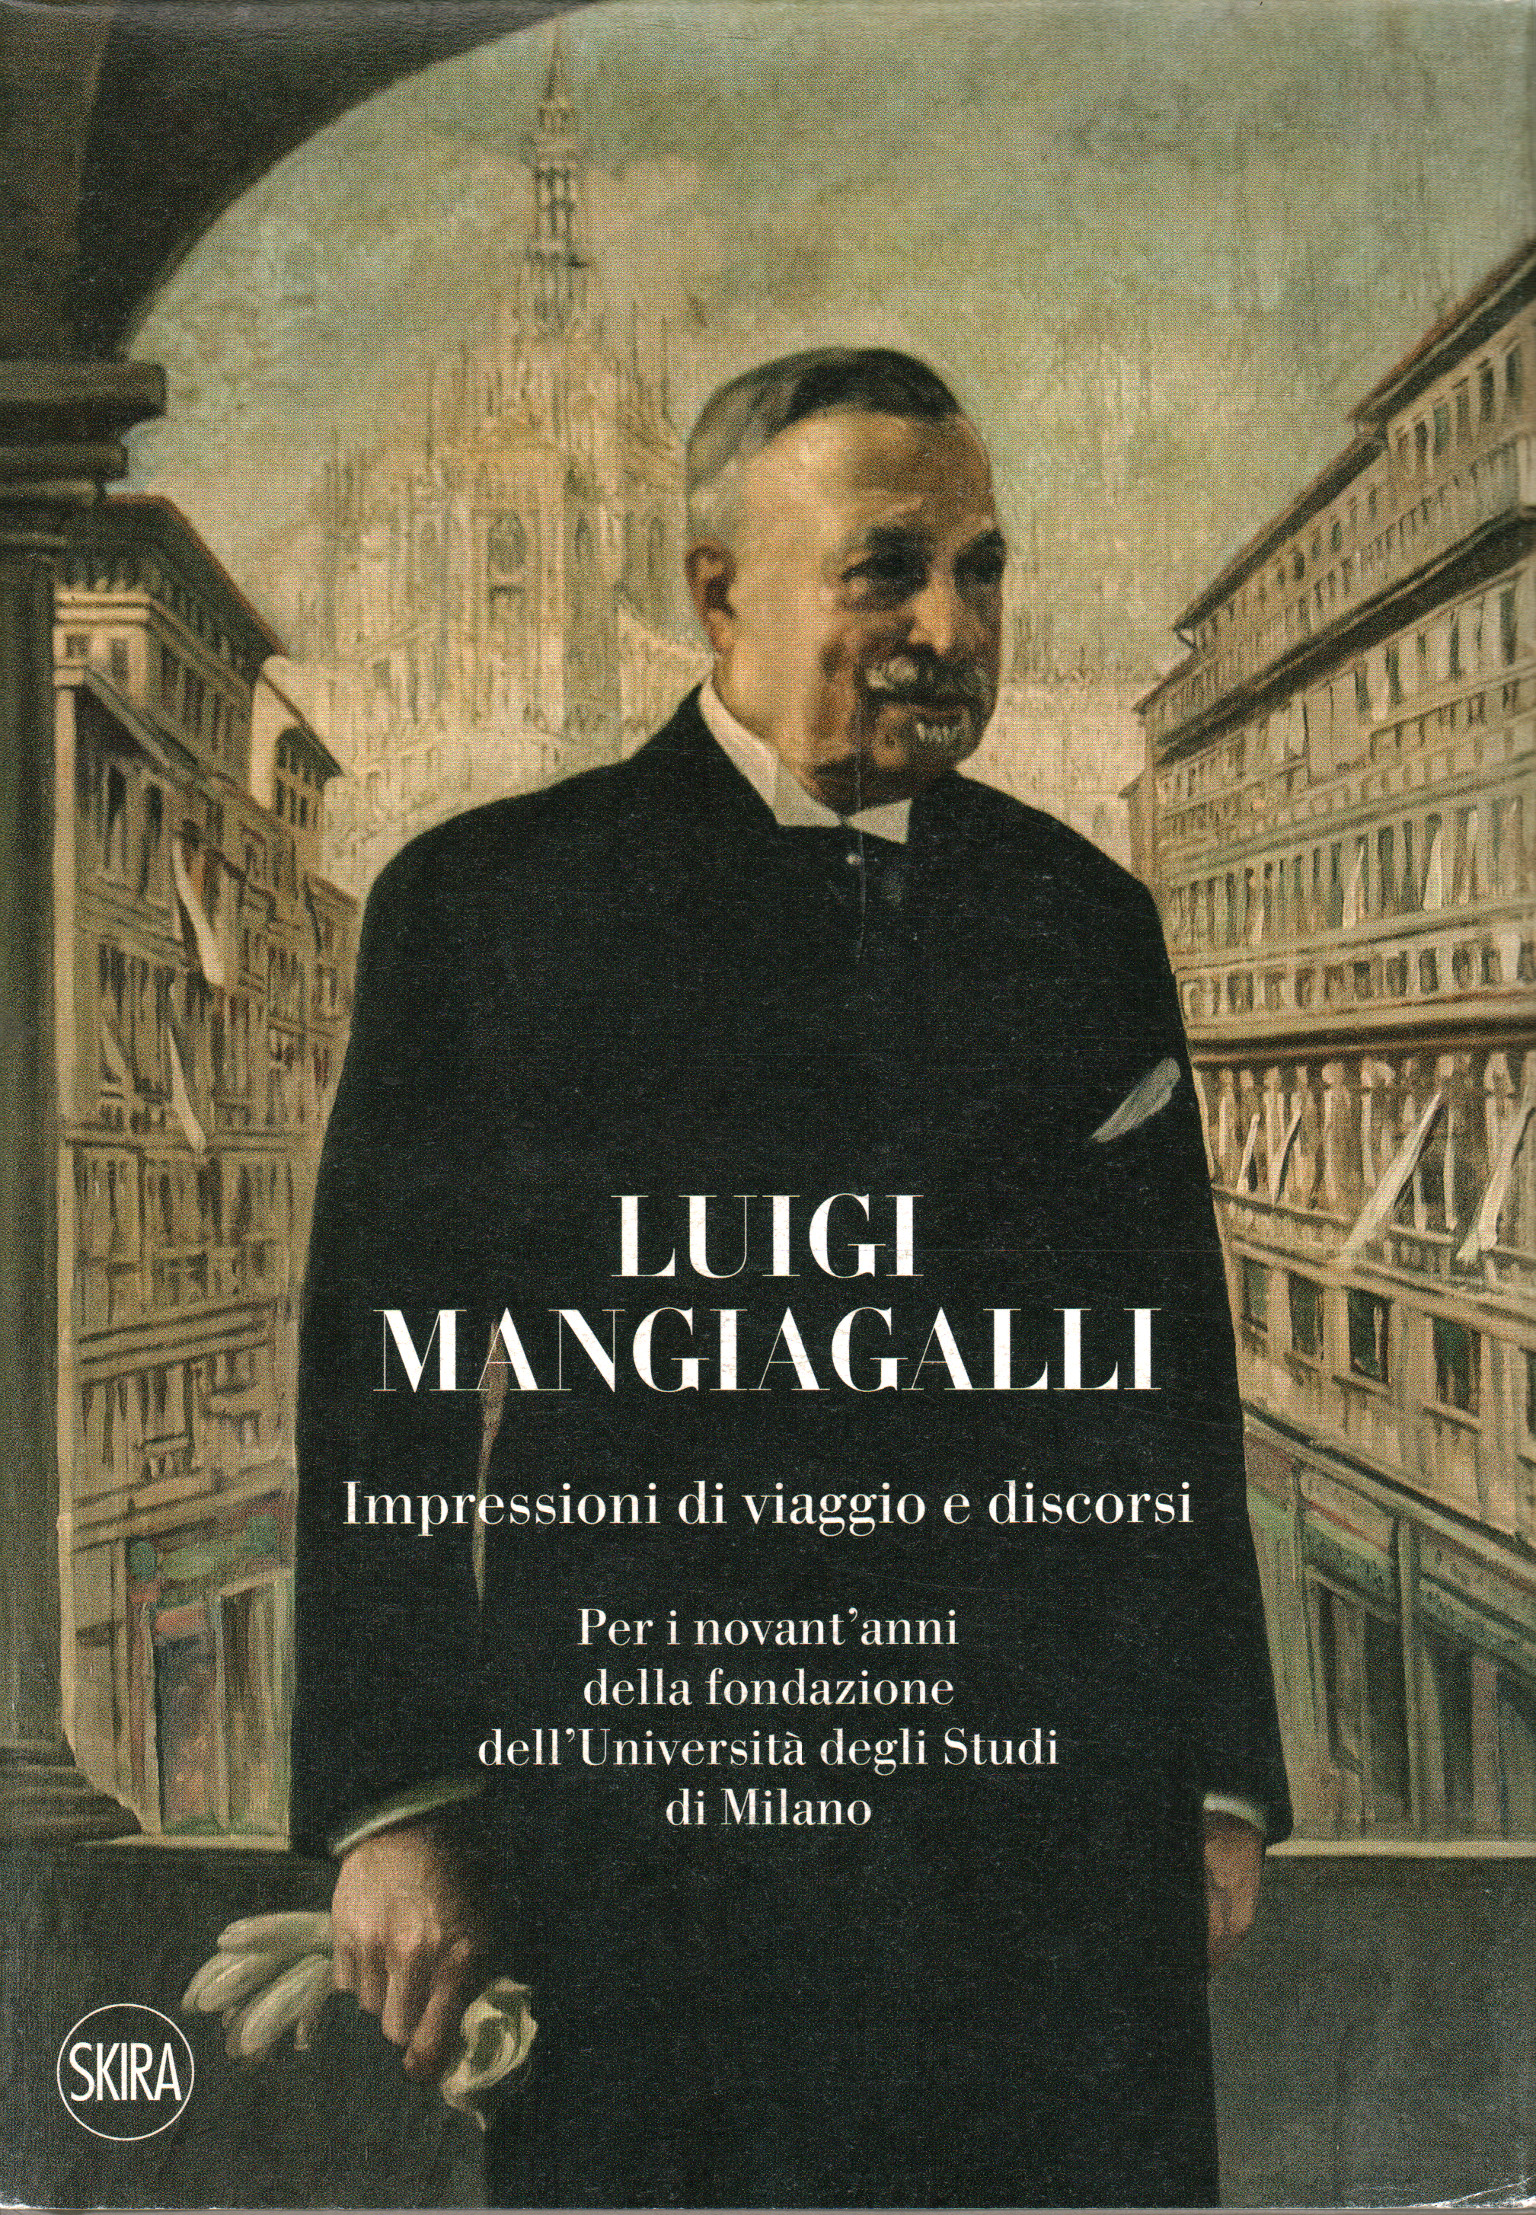 Luigi Mangiagalli, Luca Clerici